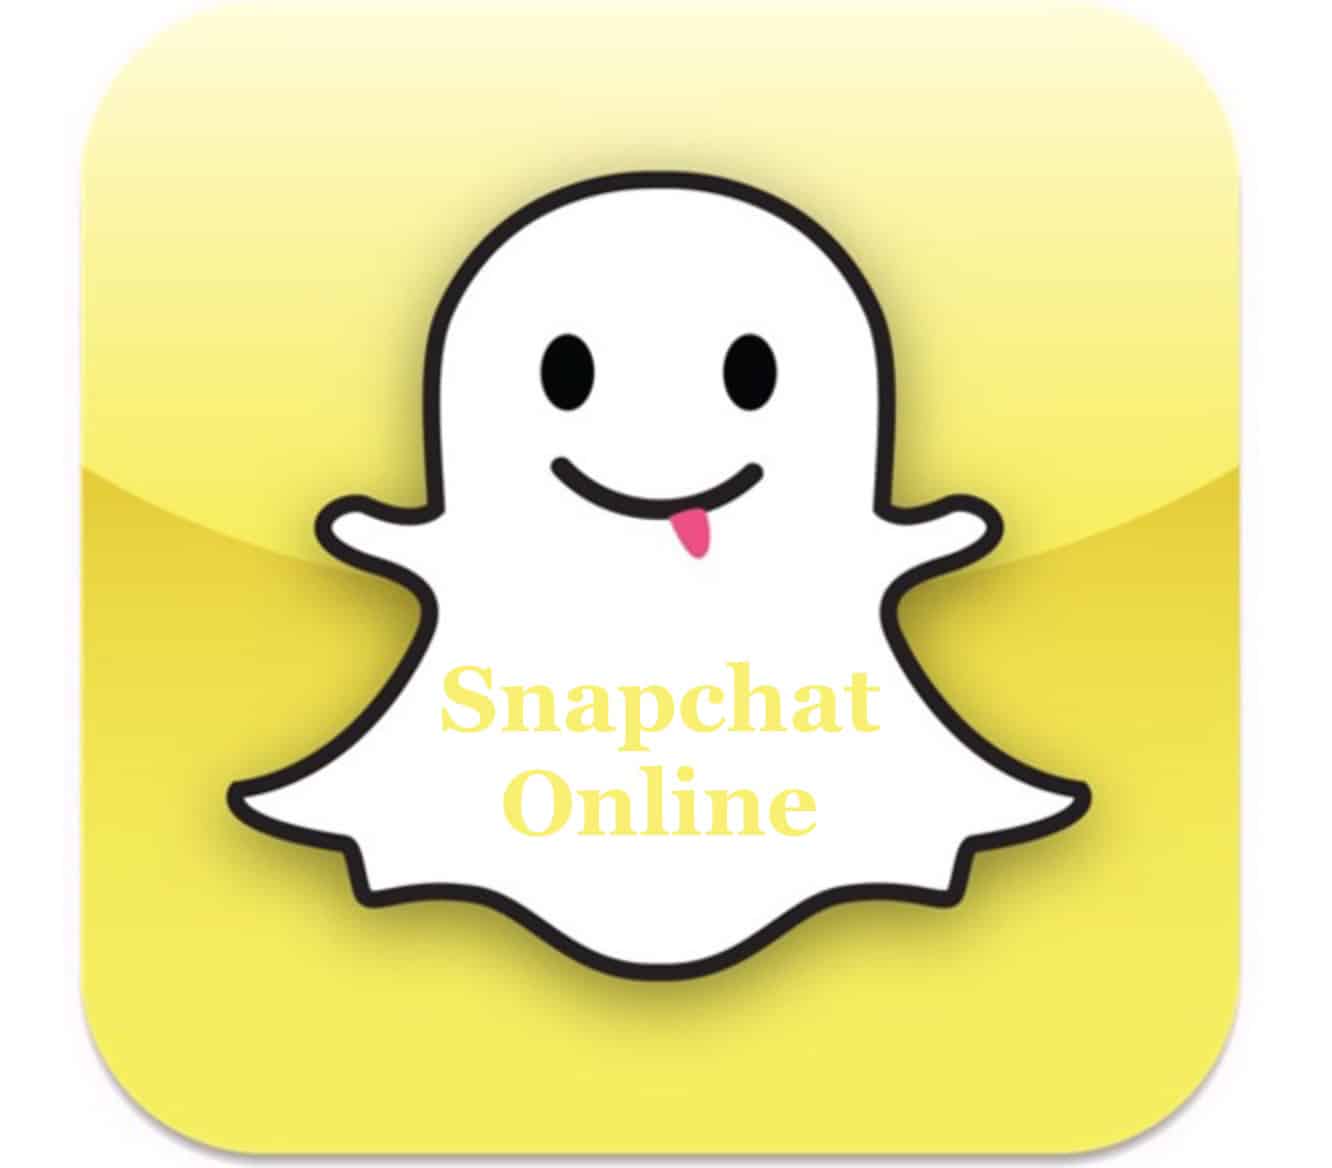 3 trucos de inicio de sesión y registro de Snapchat Online